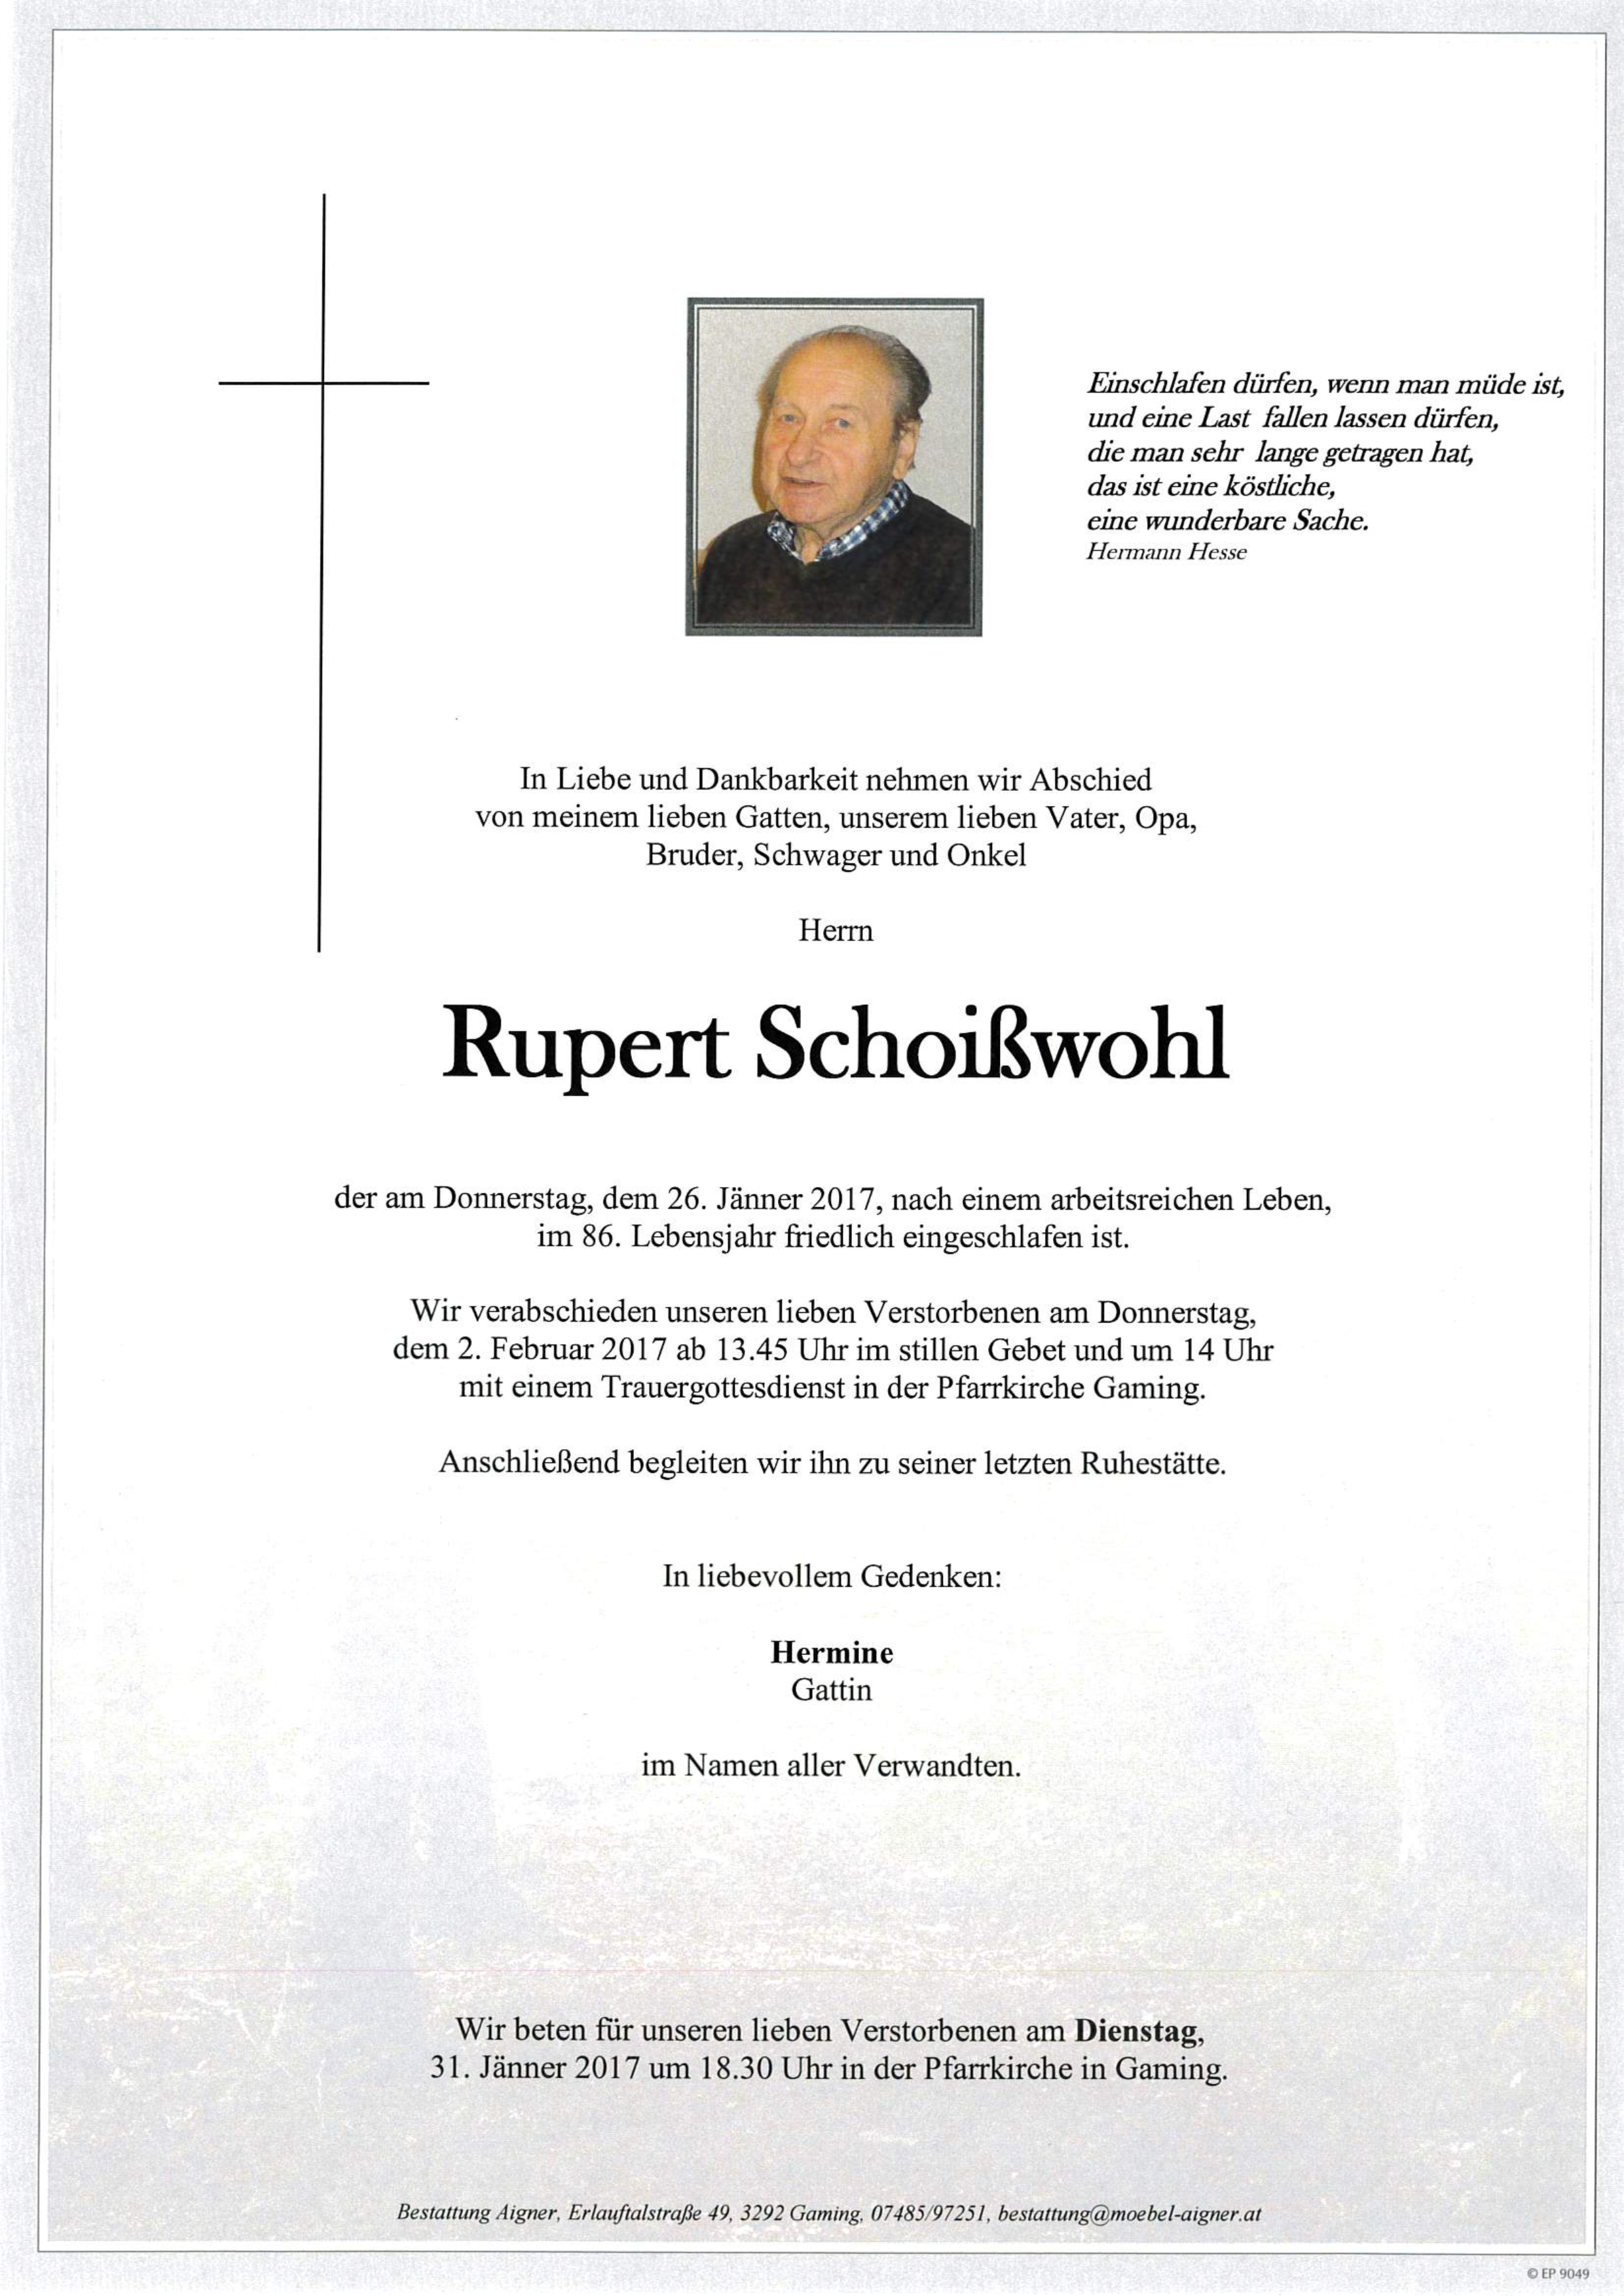 Rupert Schoißwohl